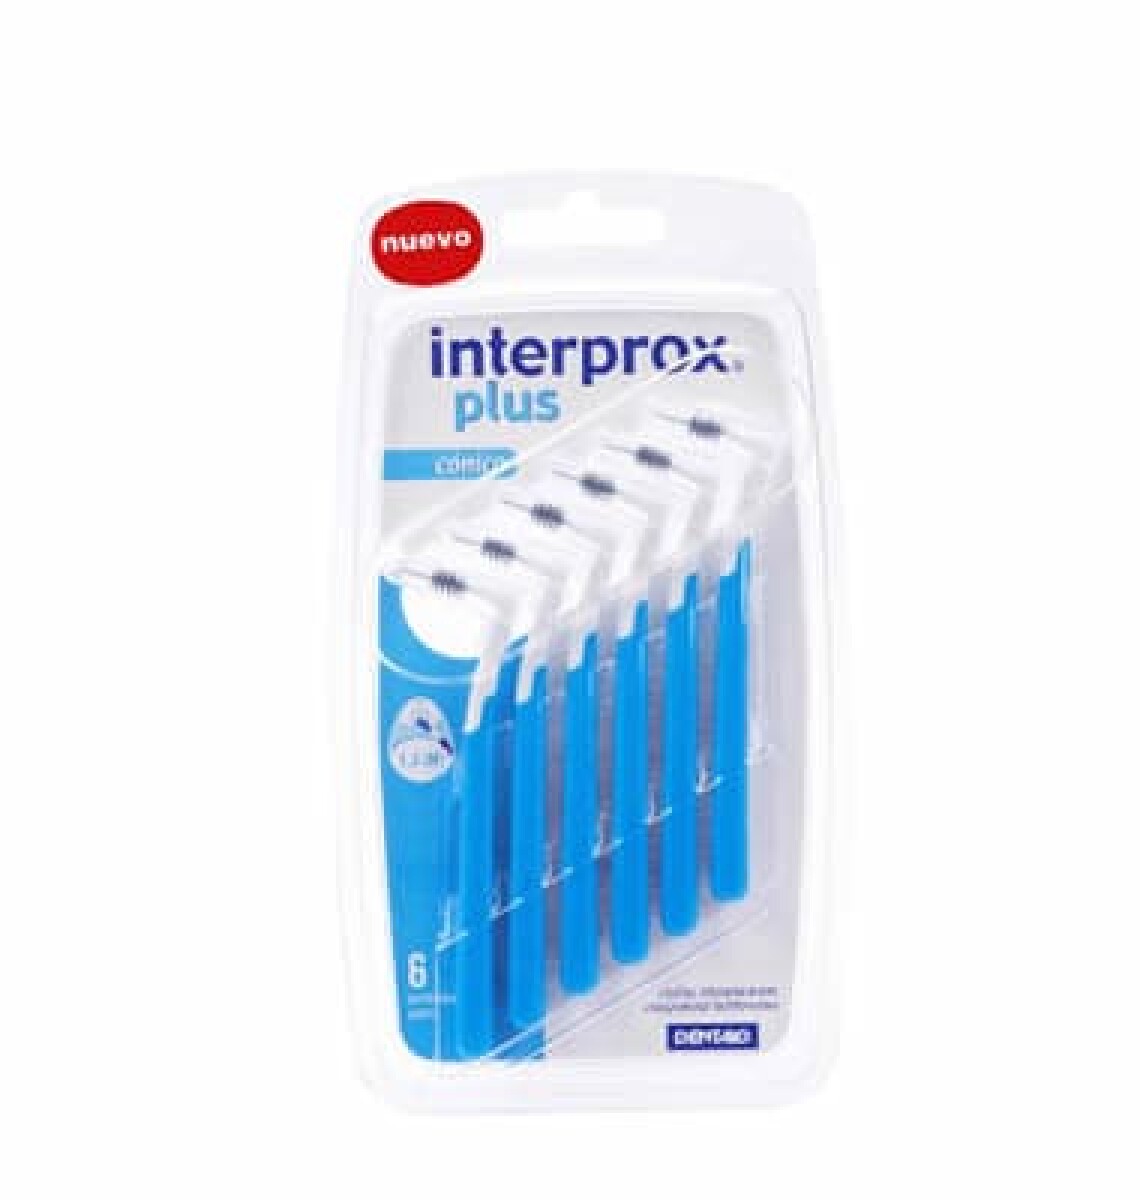 Interprox Cepillo Conical 